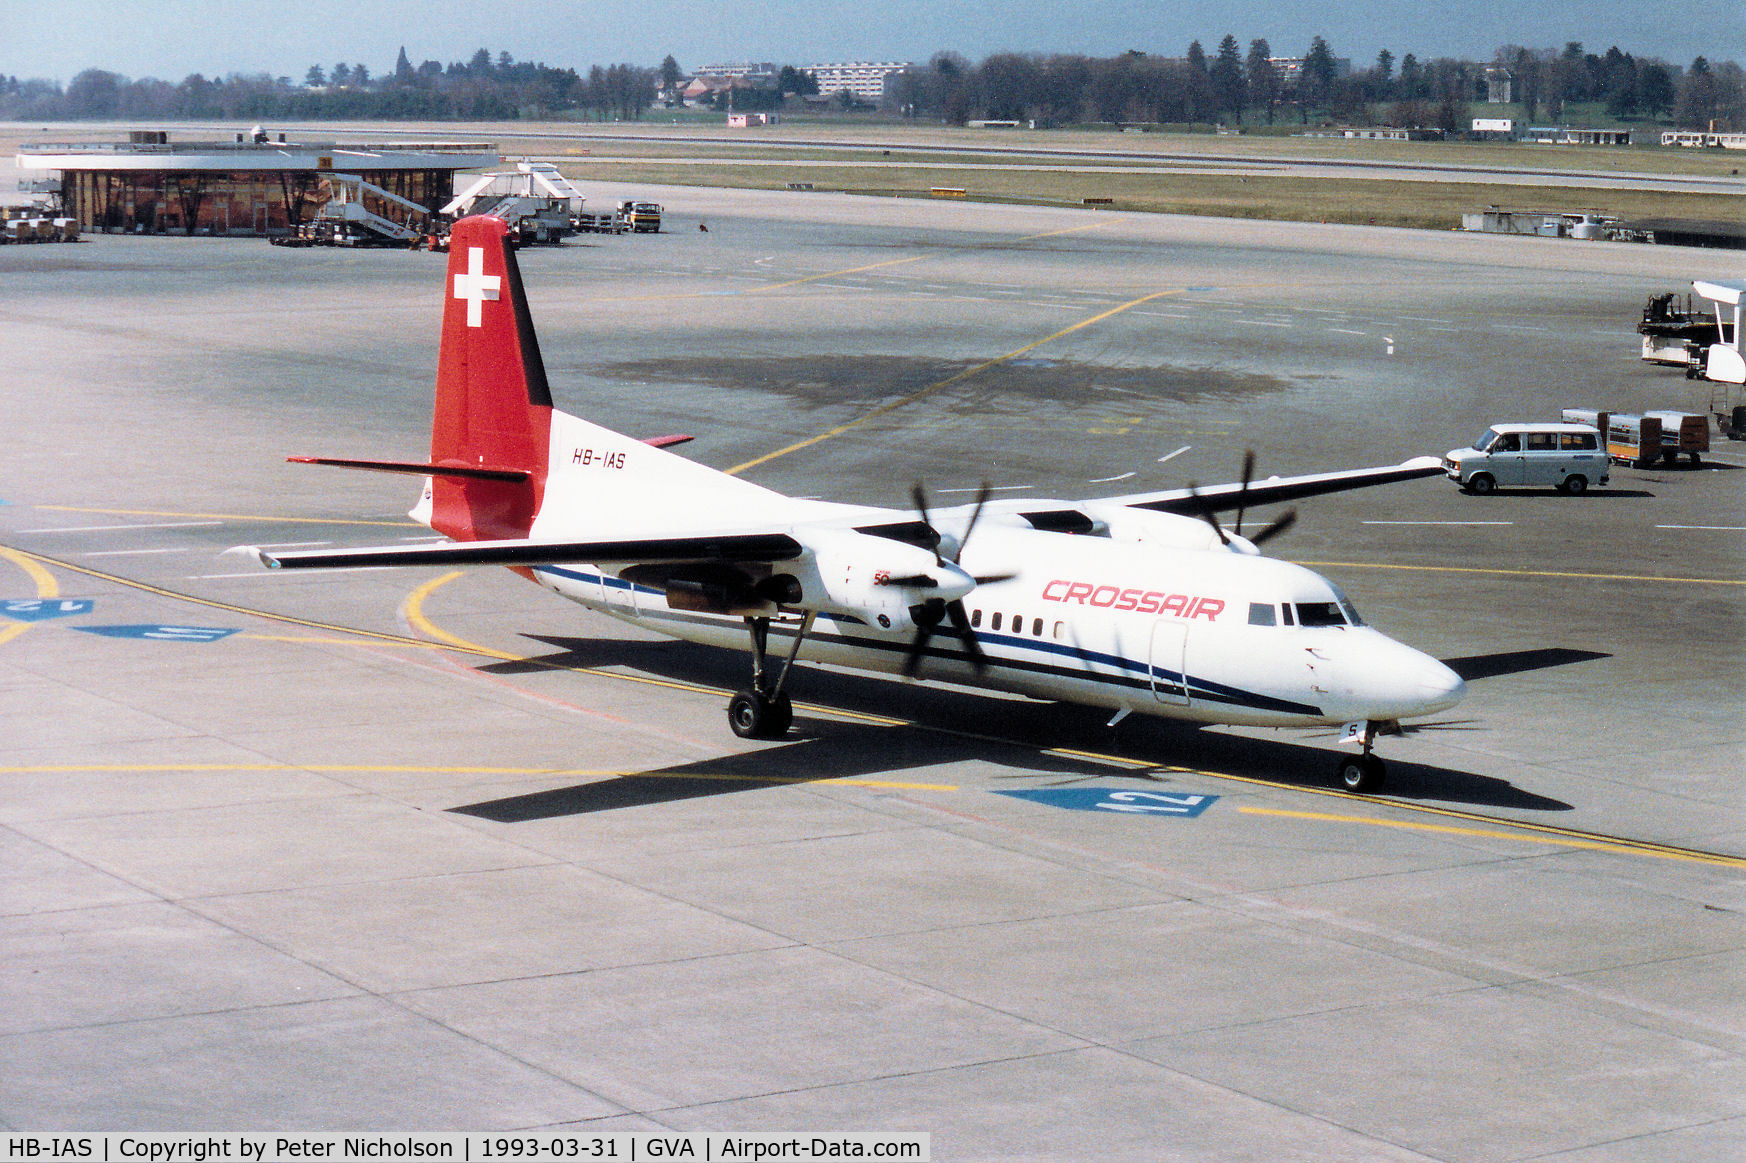 HB-IAS, 1991 Fokker 50 C/N 20220, Fokker 50 of Crossair at Geneva in March 1993.